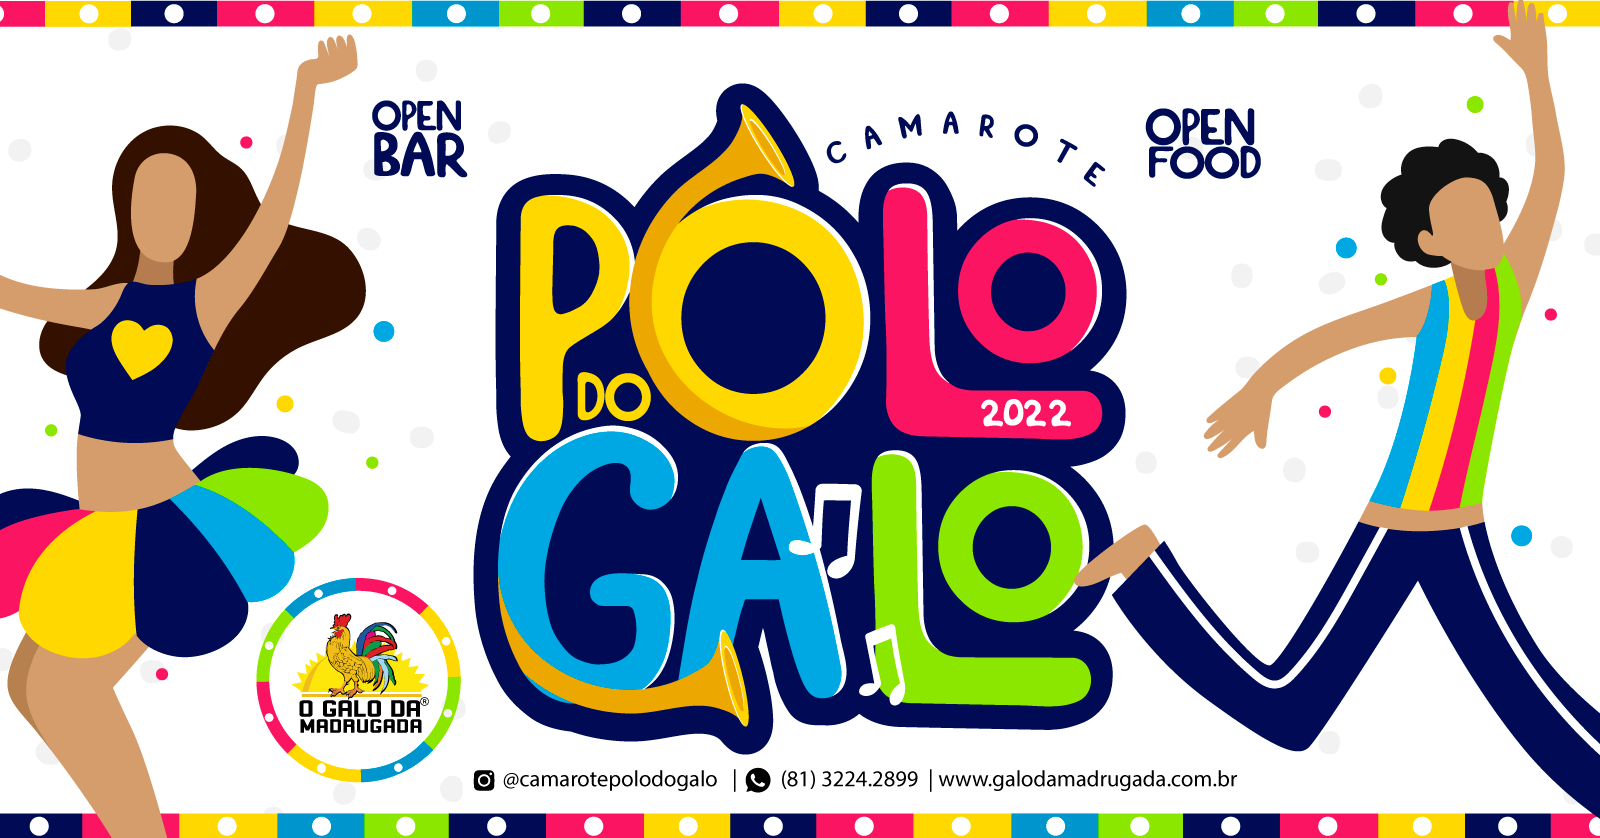 Camarote Polo do Galo dá o start nas vendas para edição de 2022